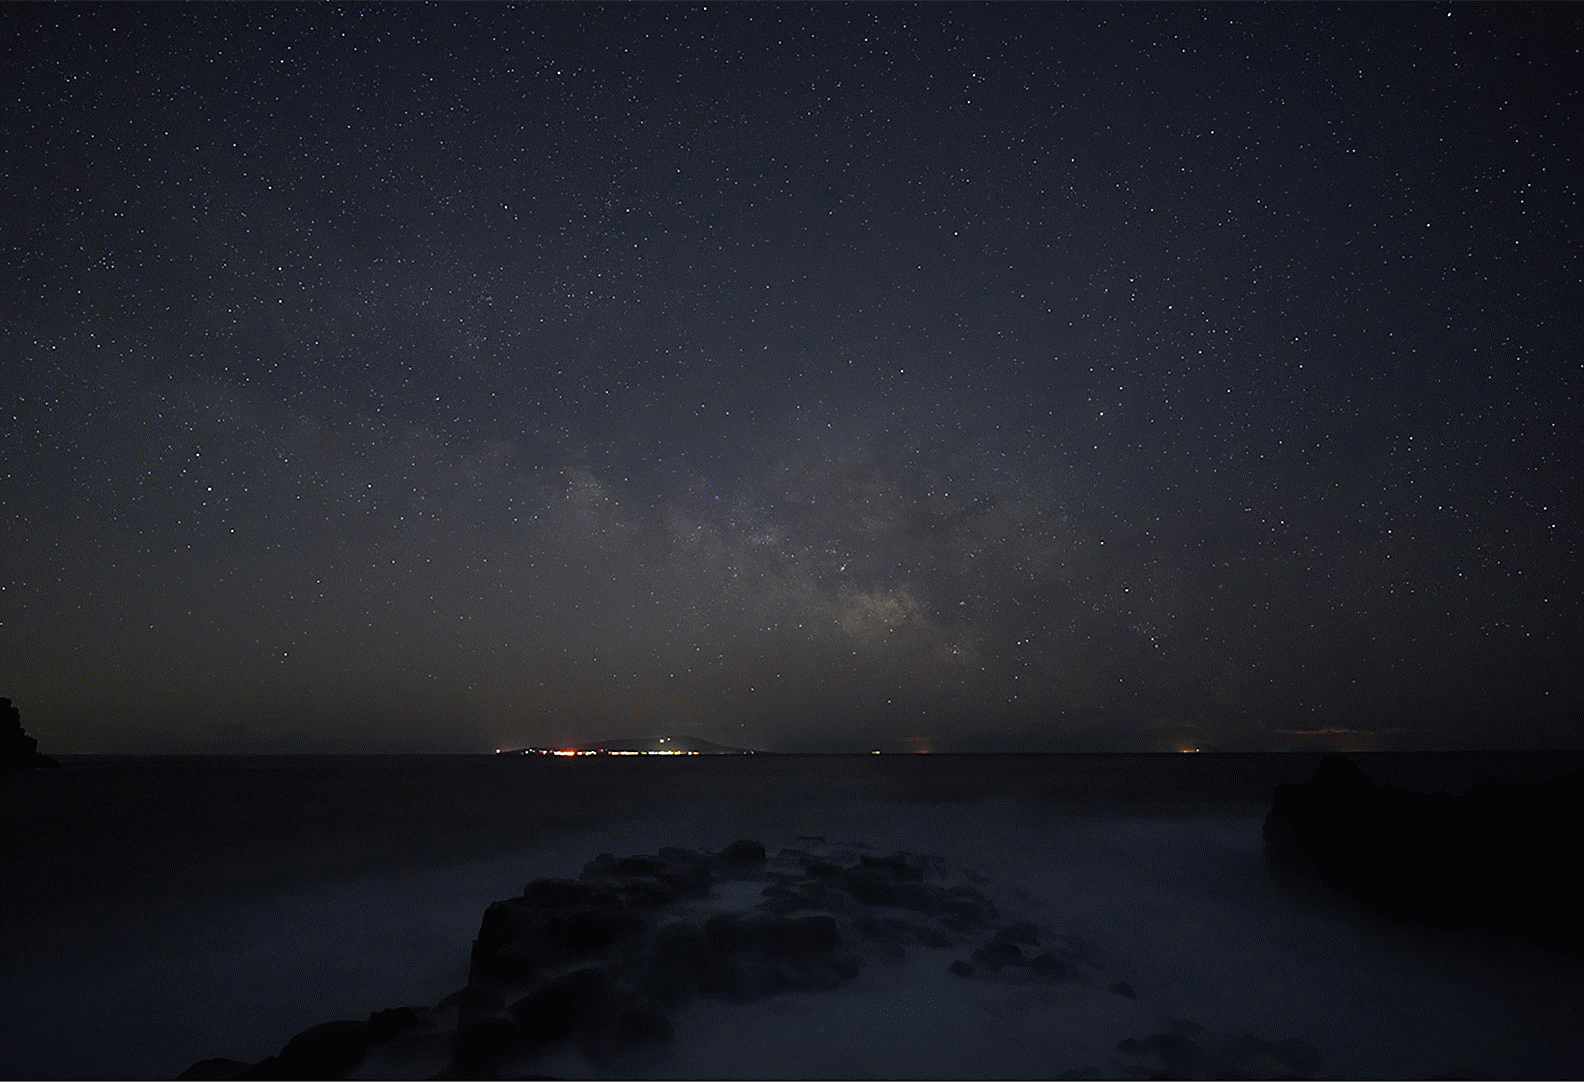 Photo d'un ciel étoilé illustrant la Voie lactée au-dessus de la mer